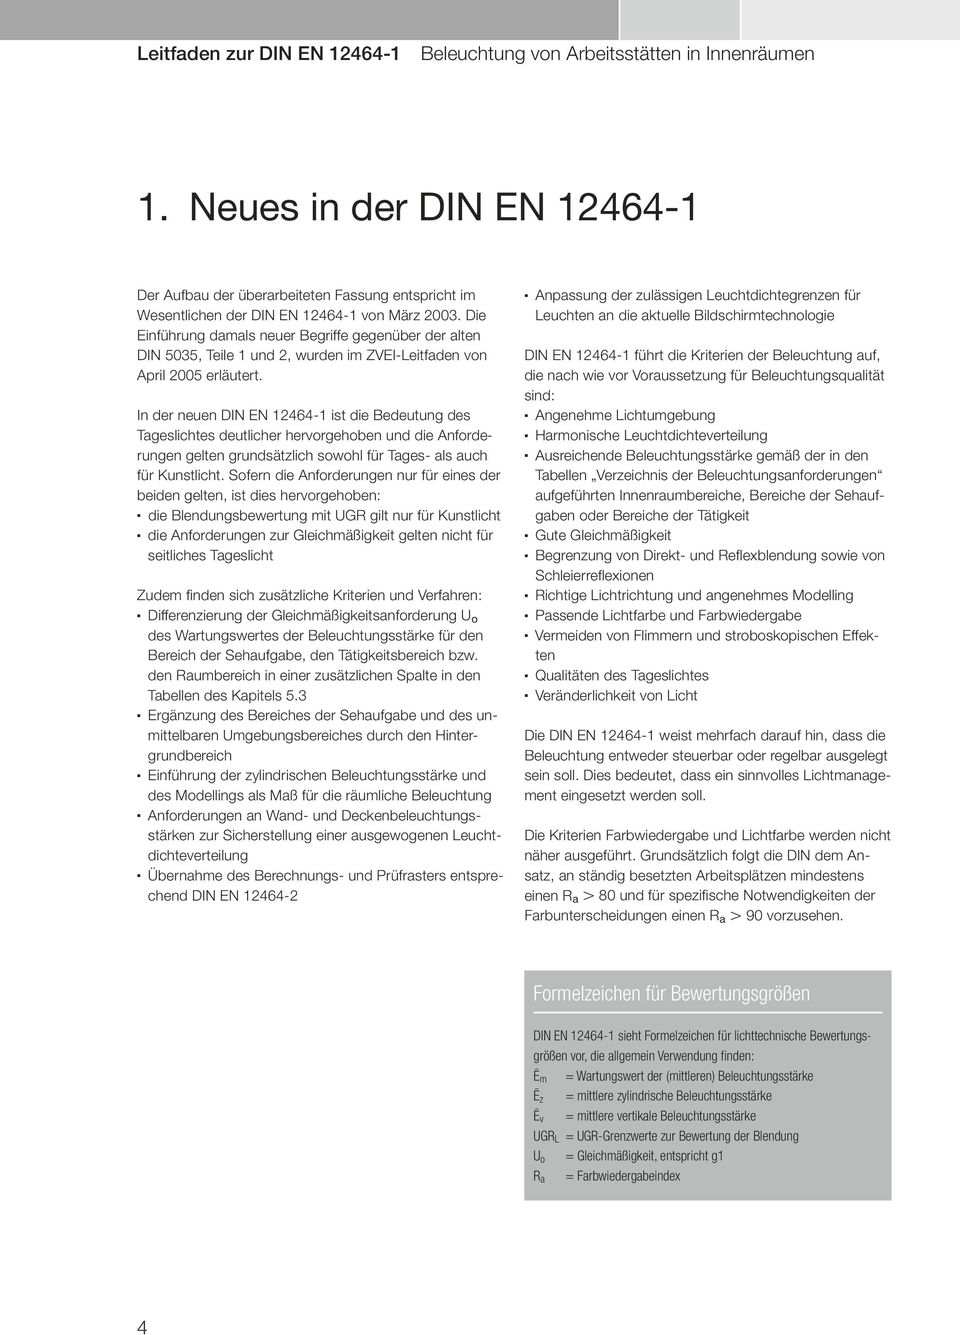 Die Einführung damals neuer Begriffe gegenüber der alten DIN 5035, Teile 1 und 2, wurden im ZVEI-Leitfaden von April 2005 erläutert.